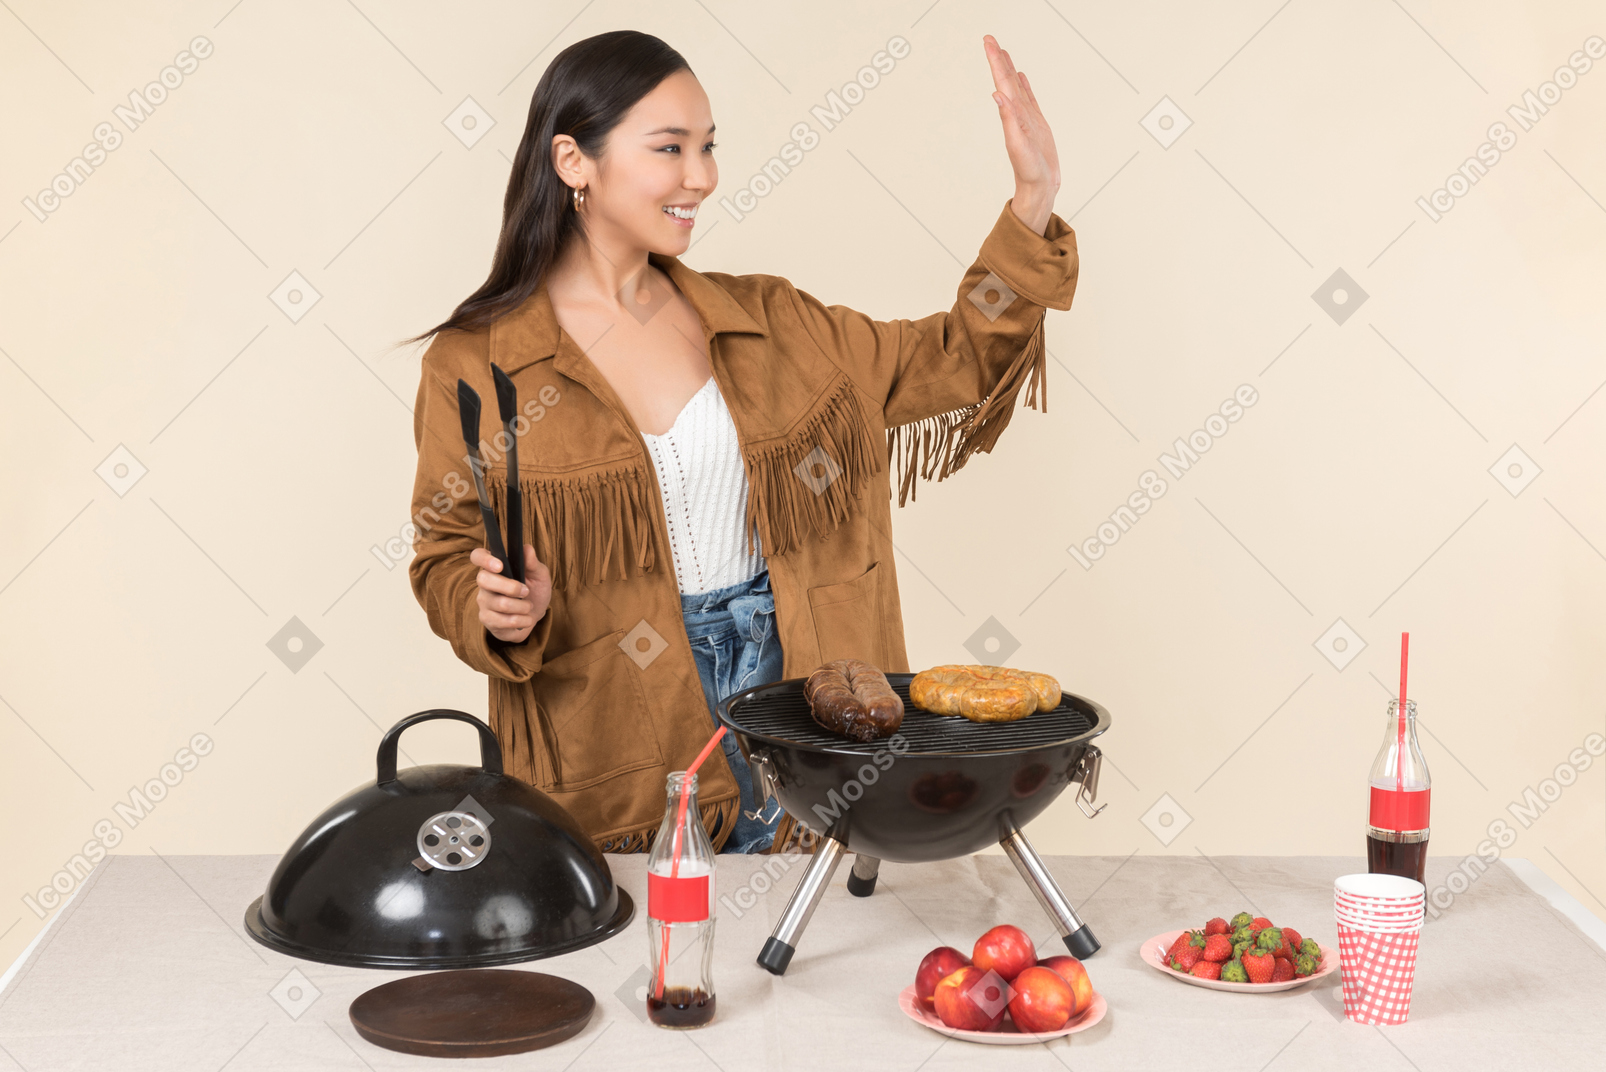 Jovem mulher asiática preparando churrasco e acenando com uma mão